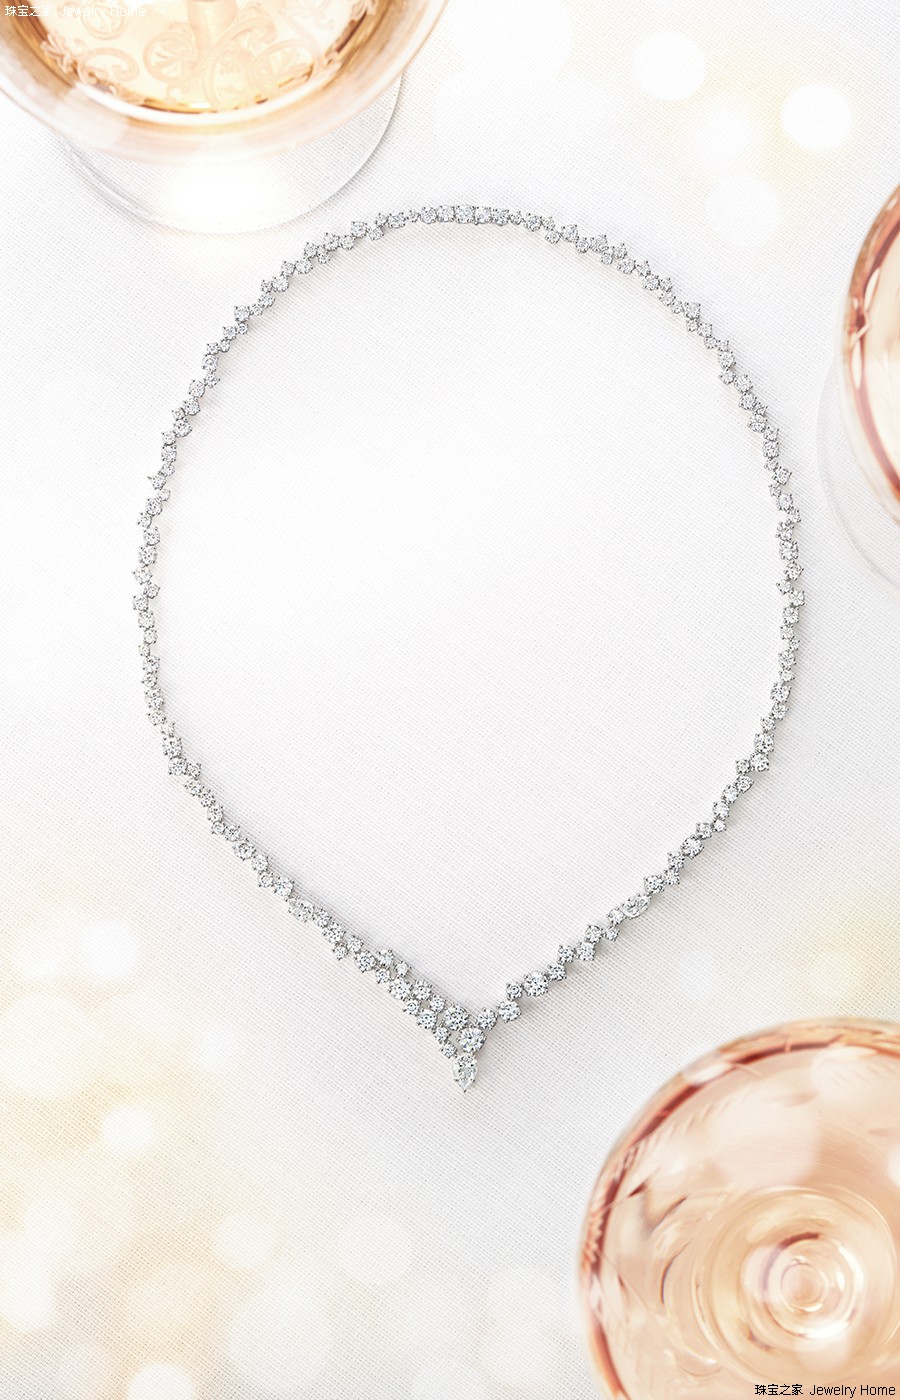 海瑞温斯顿 绚漪锦簇设计珠宝系列